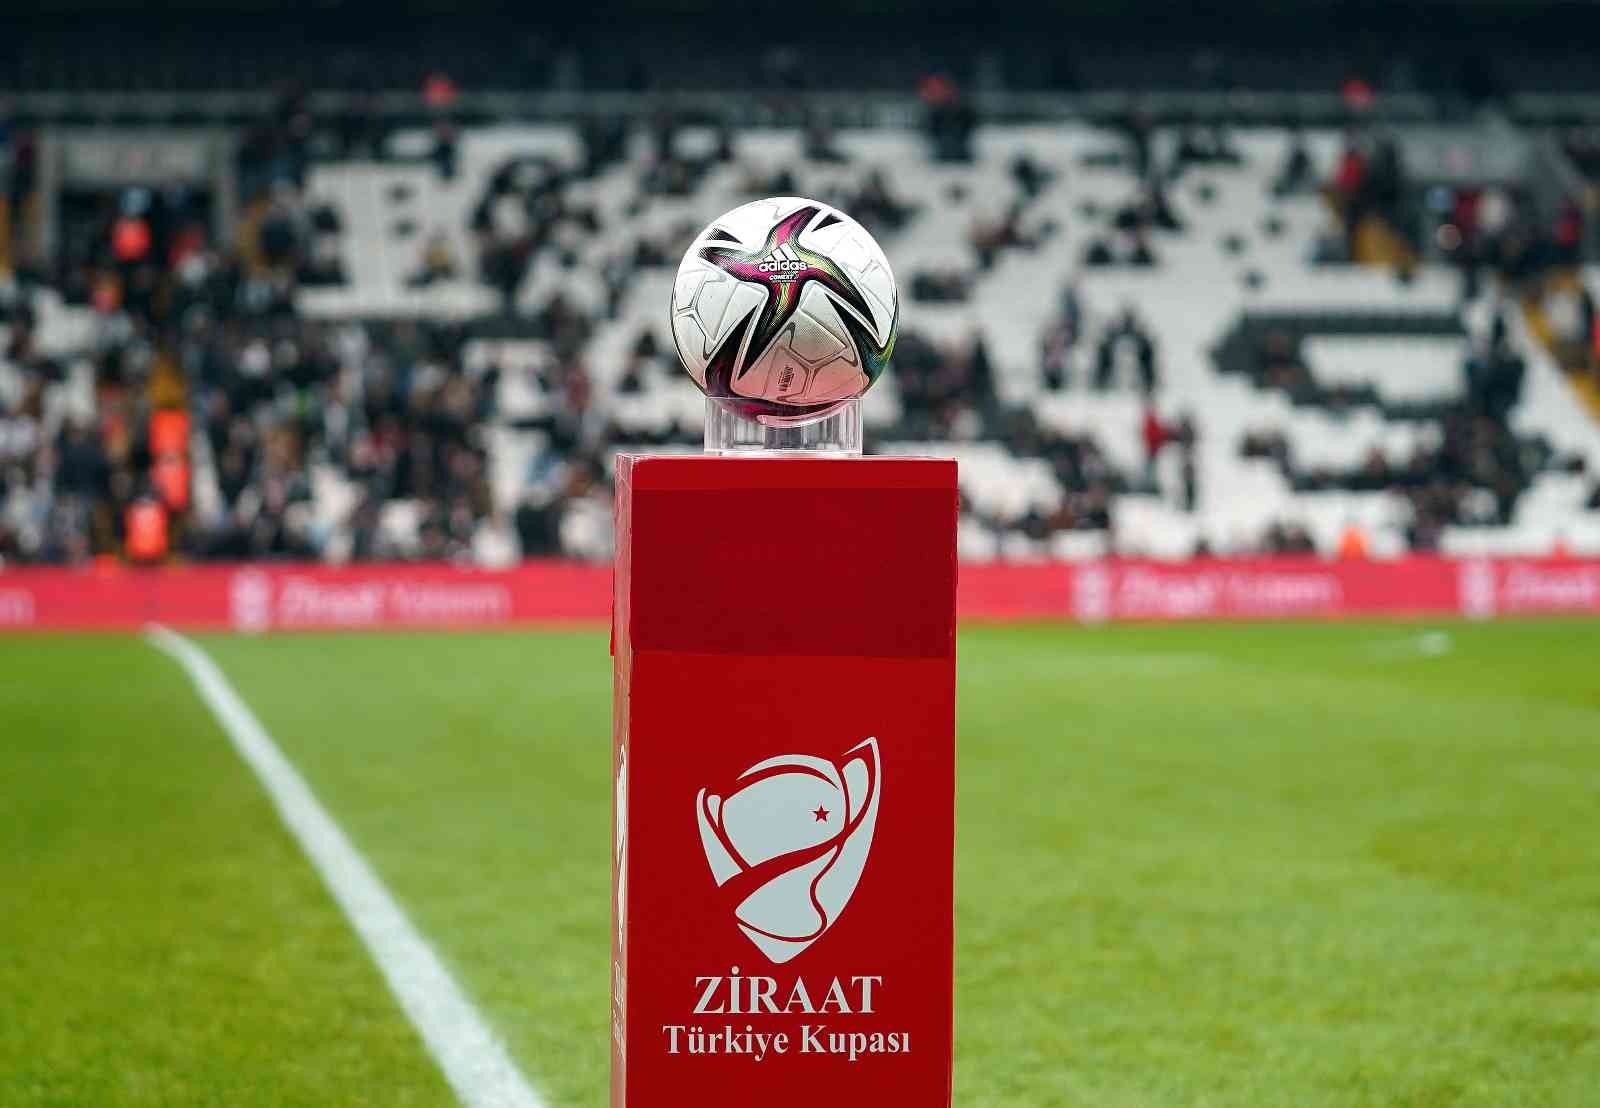 Ziraat Türkiye Kupası: Beşiktaş: 0 - Göztepe: 0 (Maç devam ediyor) #istanbul